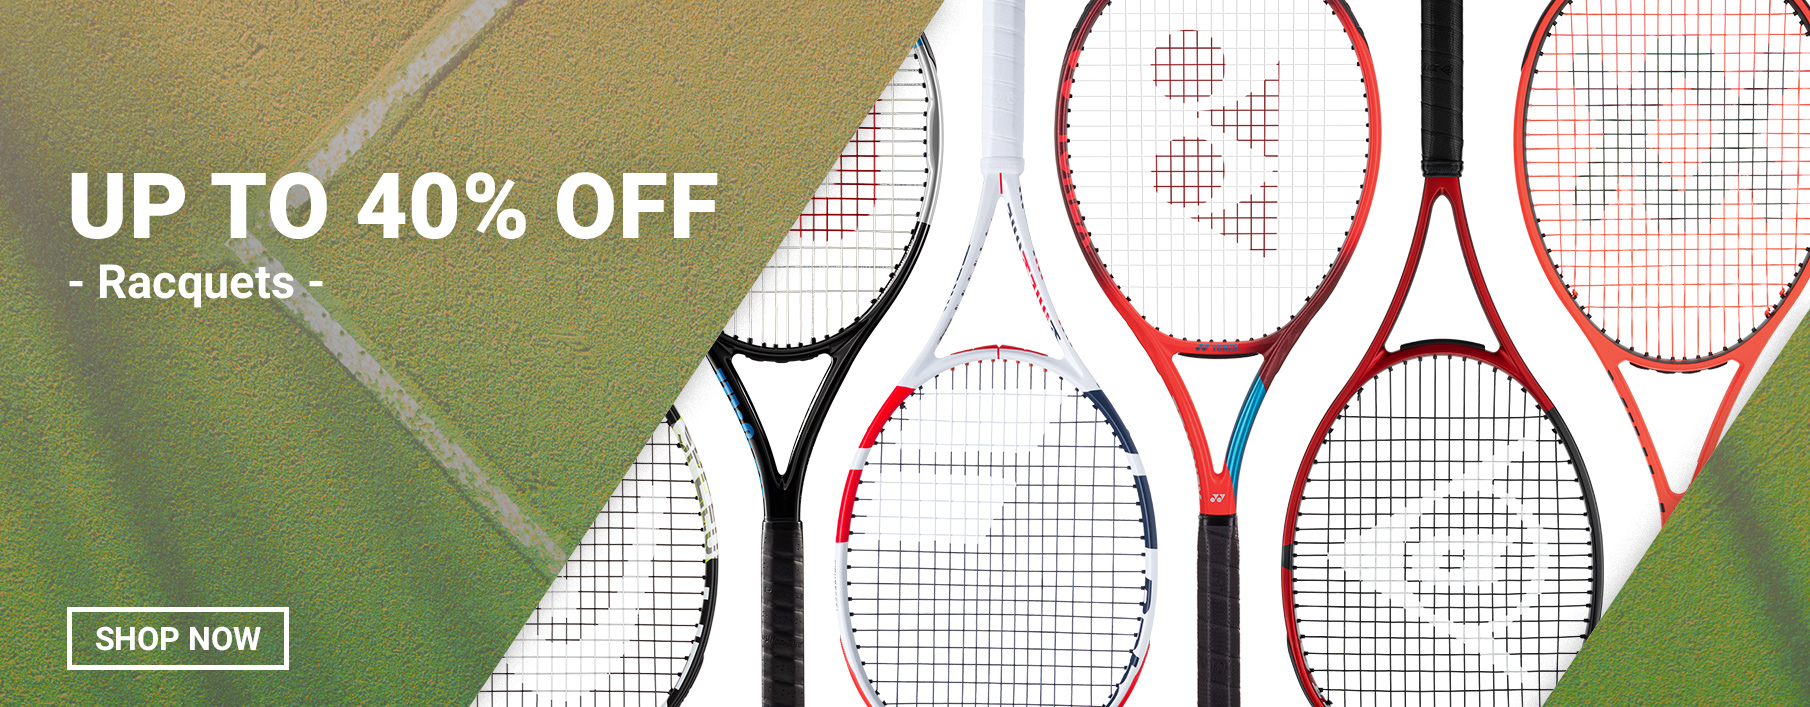 Tennis Equipment & Gear | Tennis Express